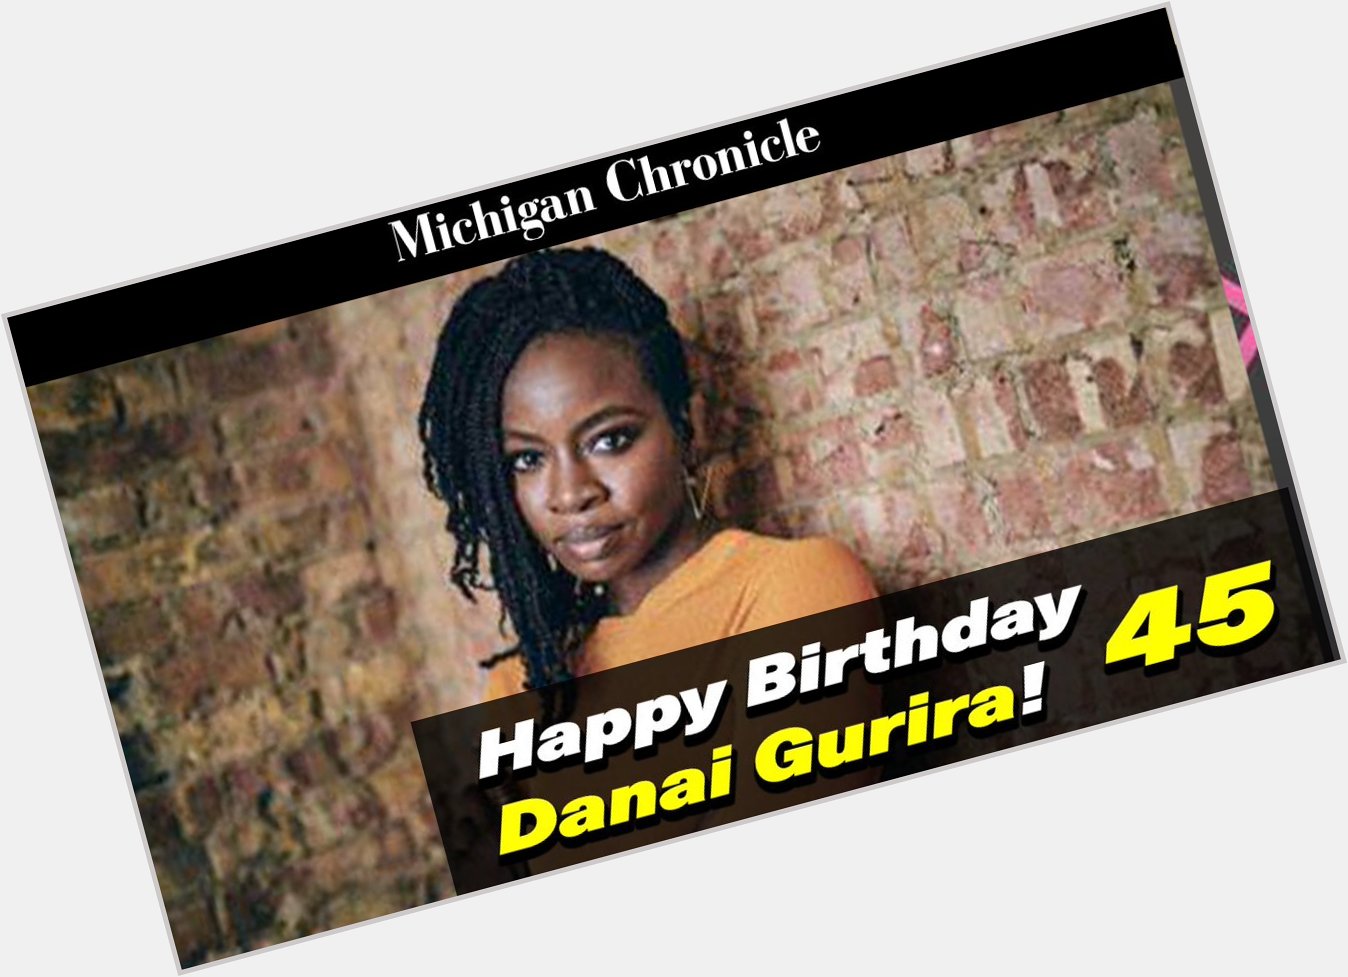 Happy Birthday to the incredible Danai Gurira!  